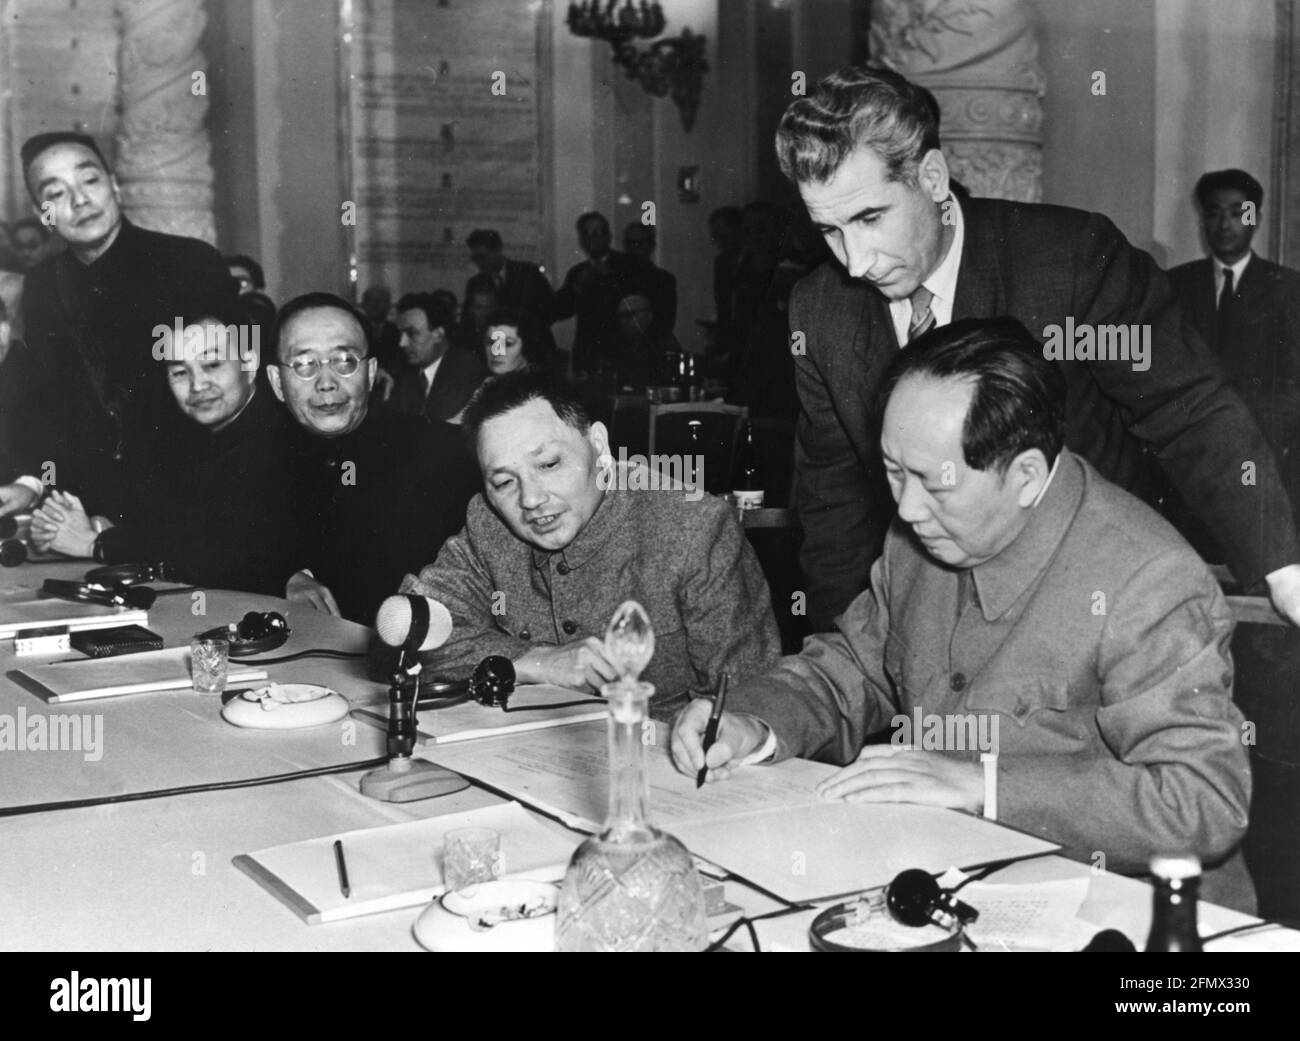 Mao Zedong, 26.12.1893 - 9.9.1976, chinesischer Politiker, ZUSÄTZLICHE-RIGHTS-CLEARANCE-INFO-NOT-AVAILABLE Stockfoto